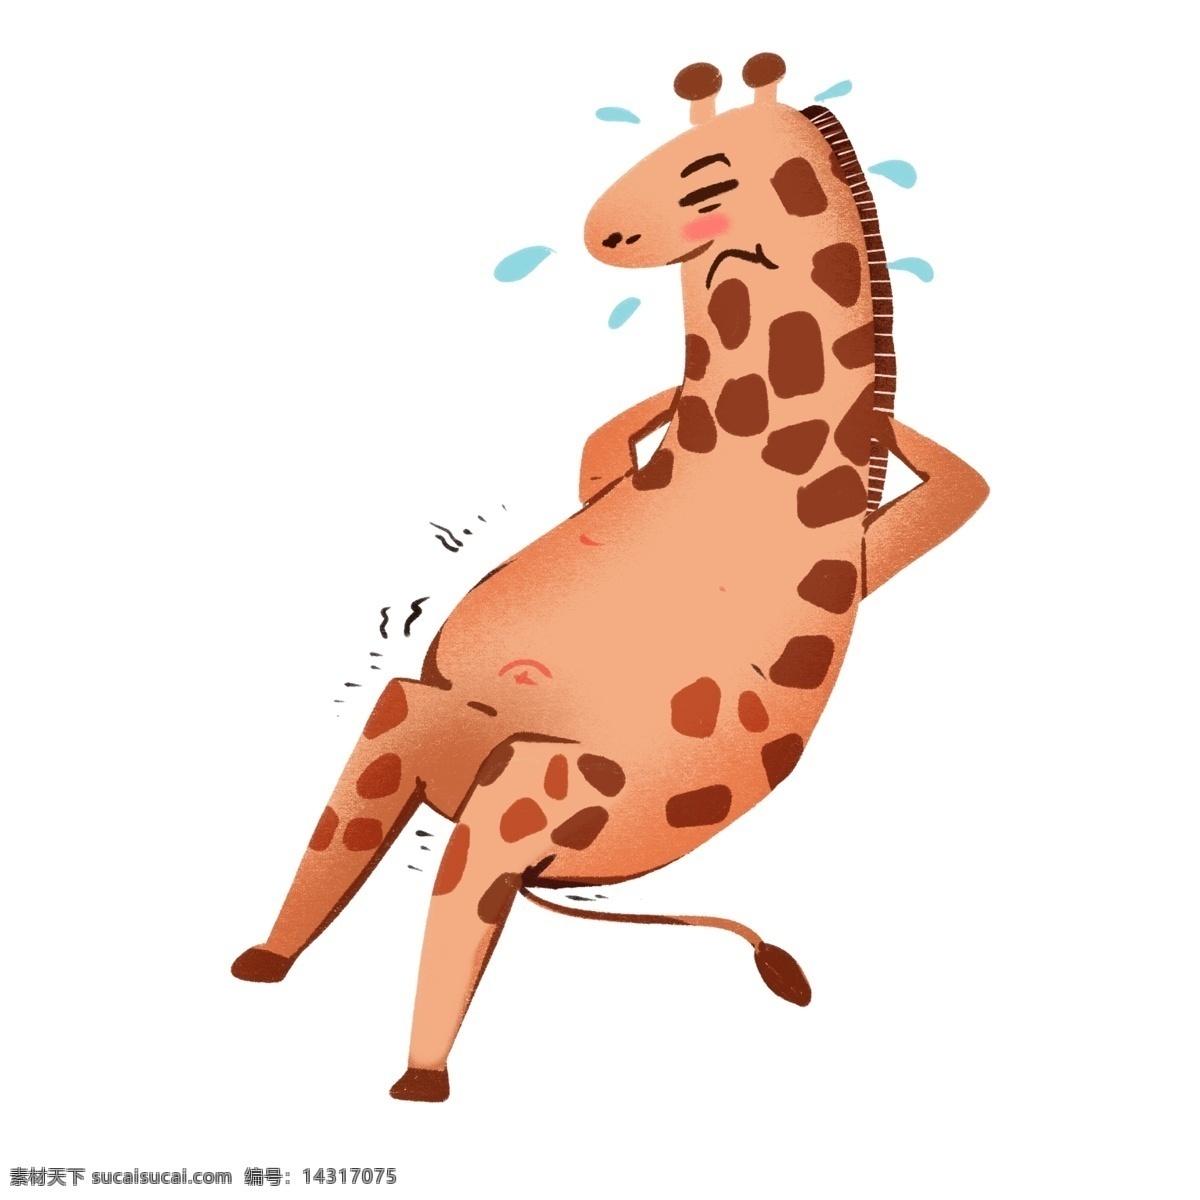 肥胖 可爱 动物 拟人化 长颈鹿 肥胖动物 可爱动物 动画插画 拟人动物 拟人 减肥 运动 健身 动物手绘 仰卧起坐